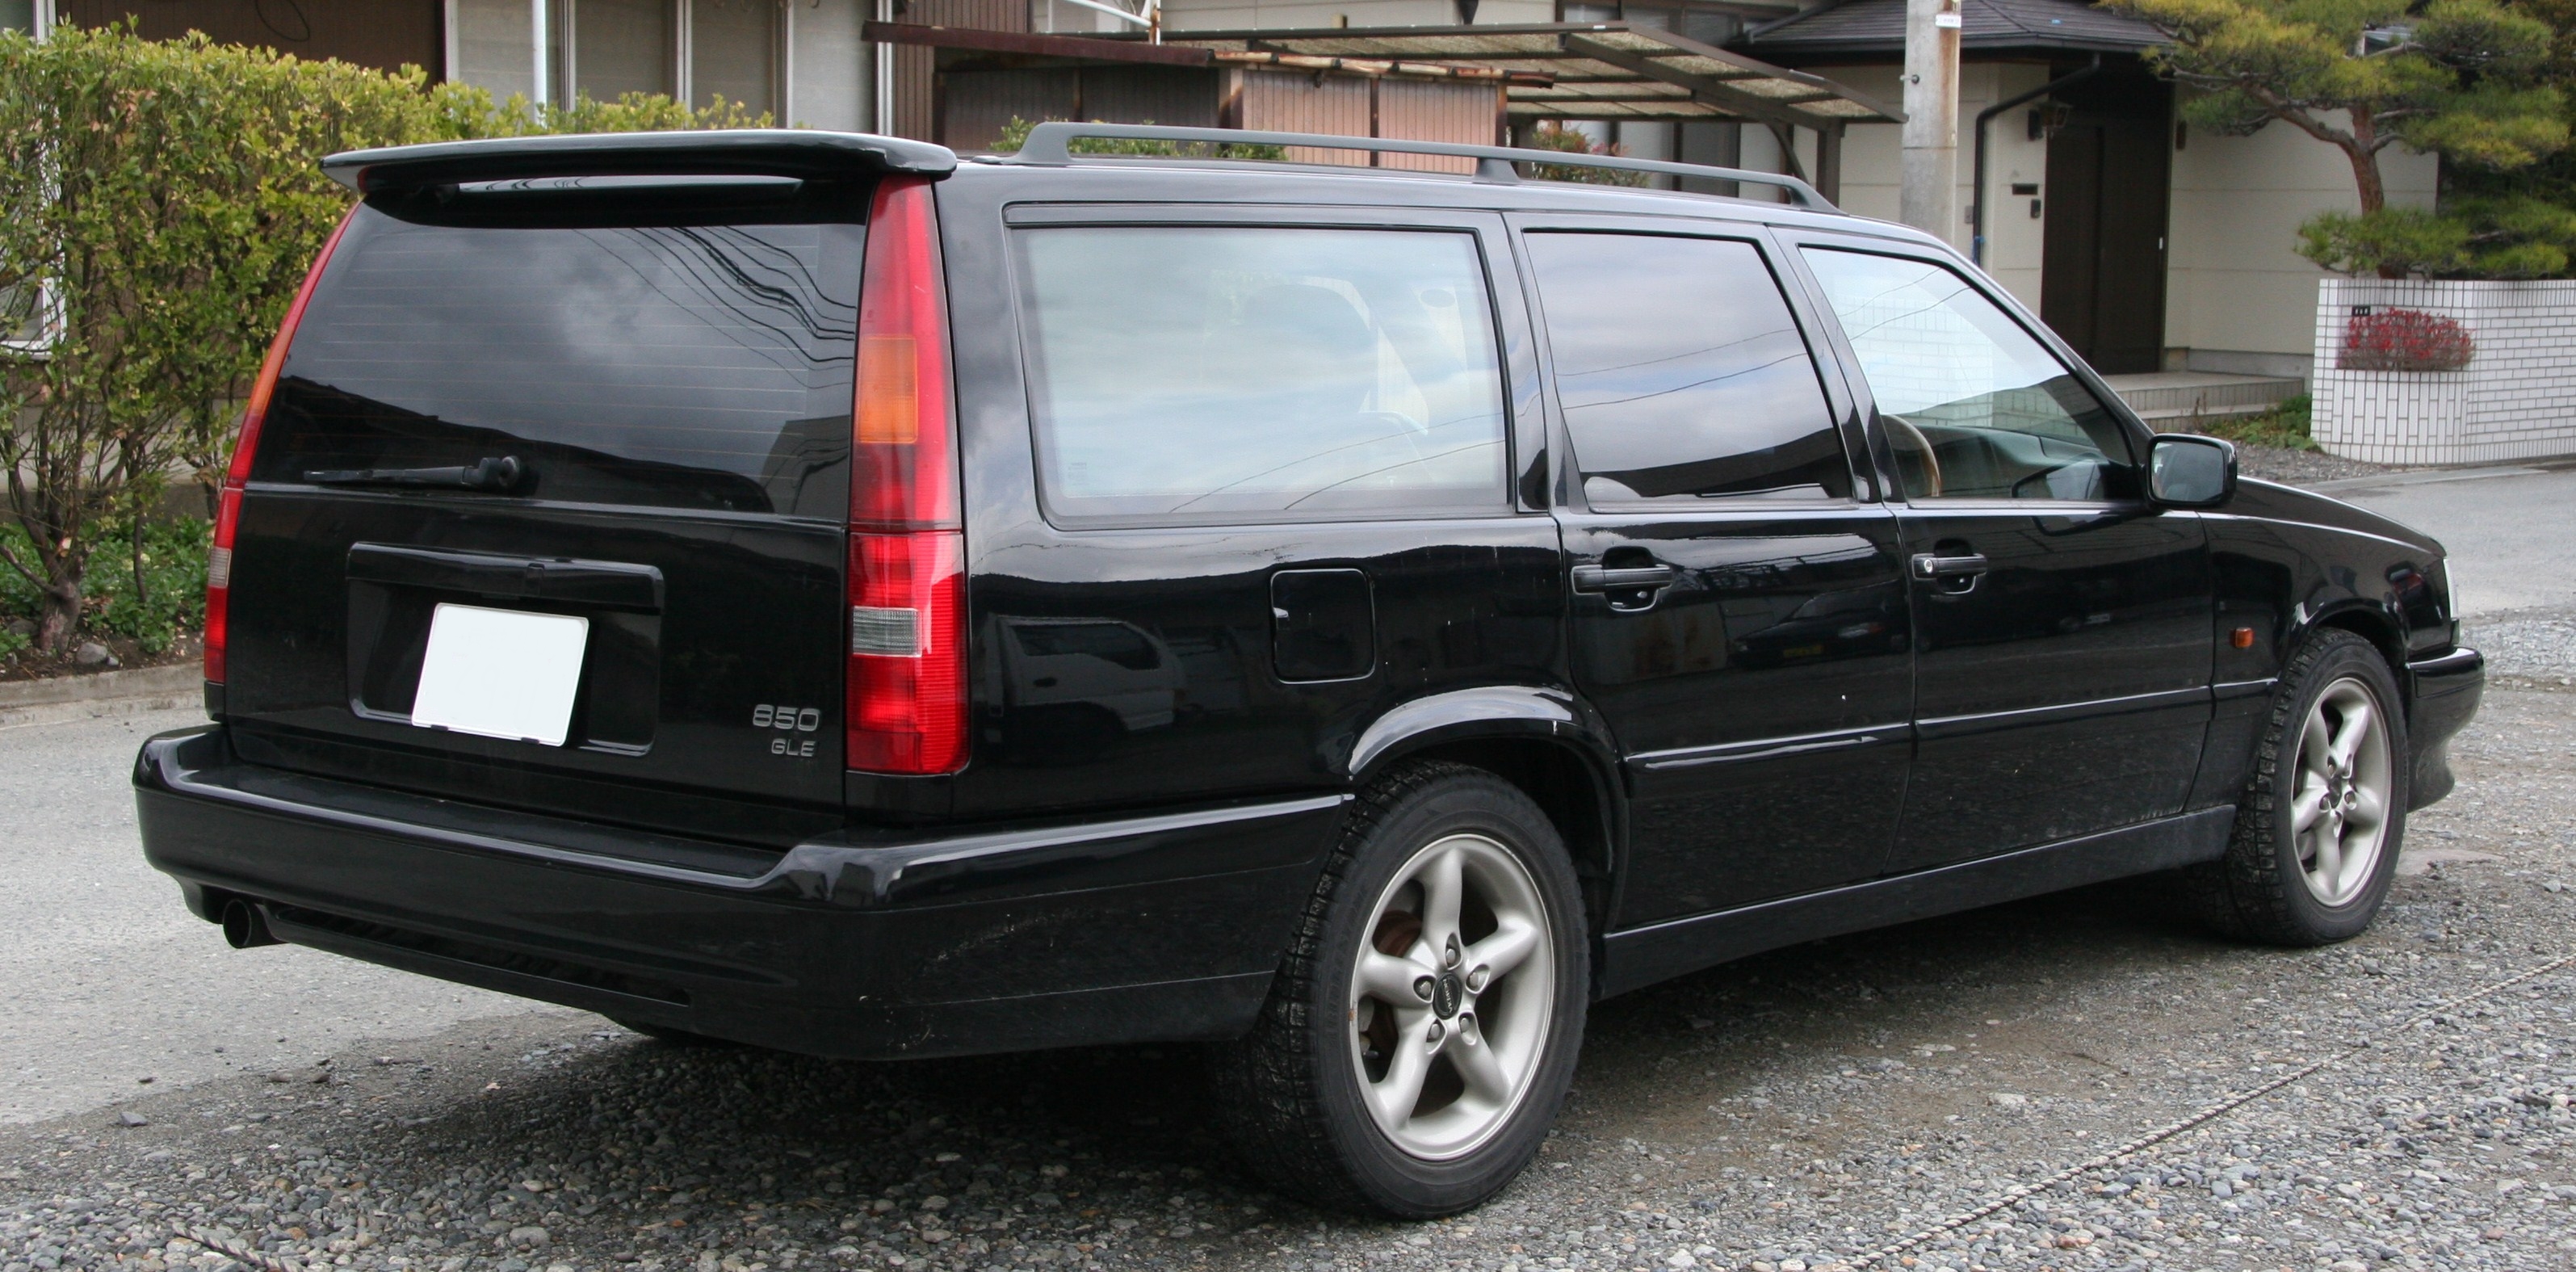 File:Volvo 850 GLE rear.jpg